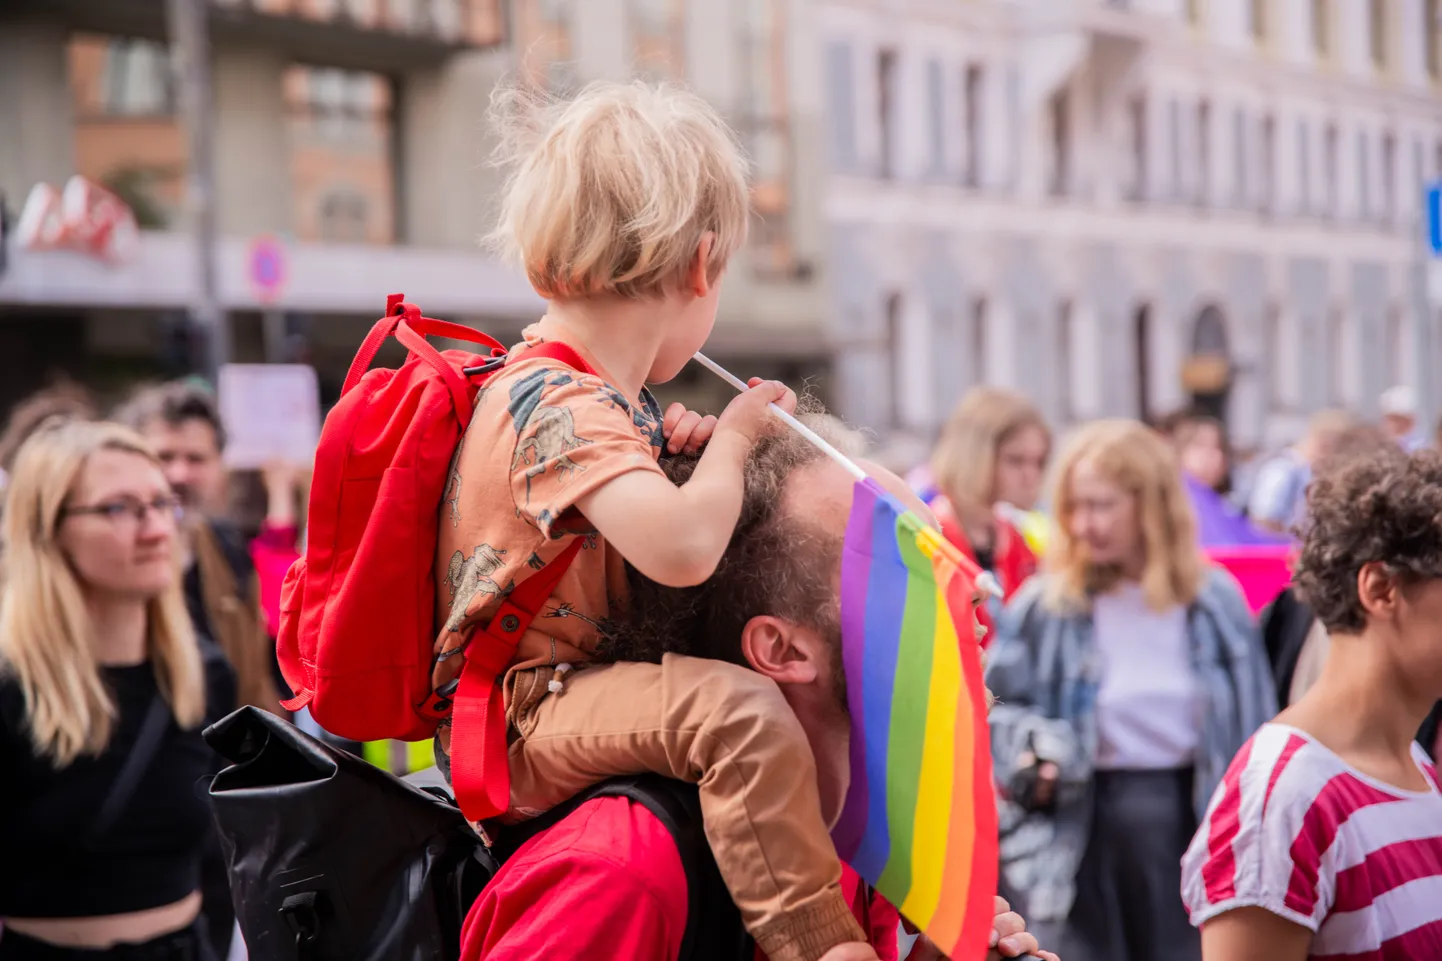 Krāsaini un jaudīgi aizvadīts praida gājiens Rīgā kurā piedalījušies ap 8 tūkstošiem cilvēku